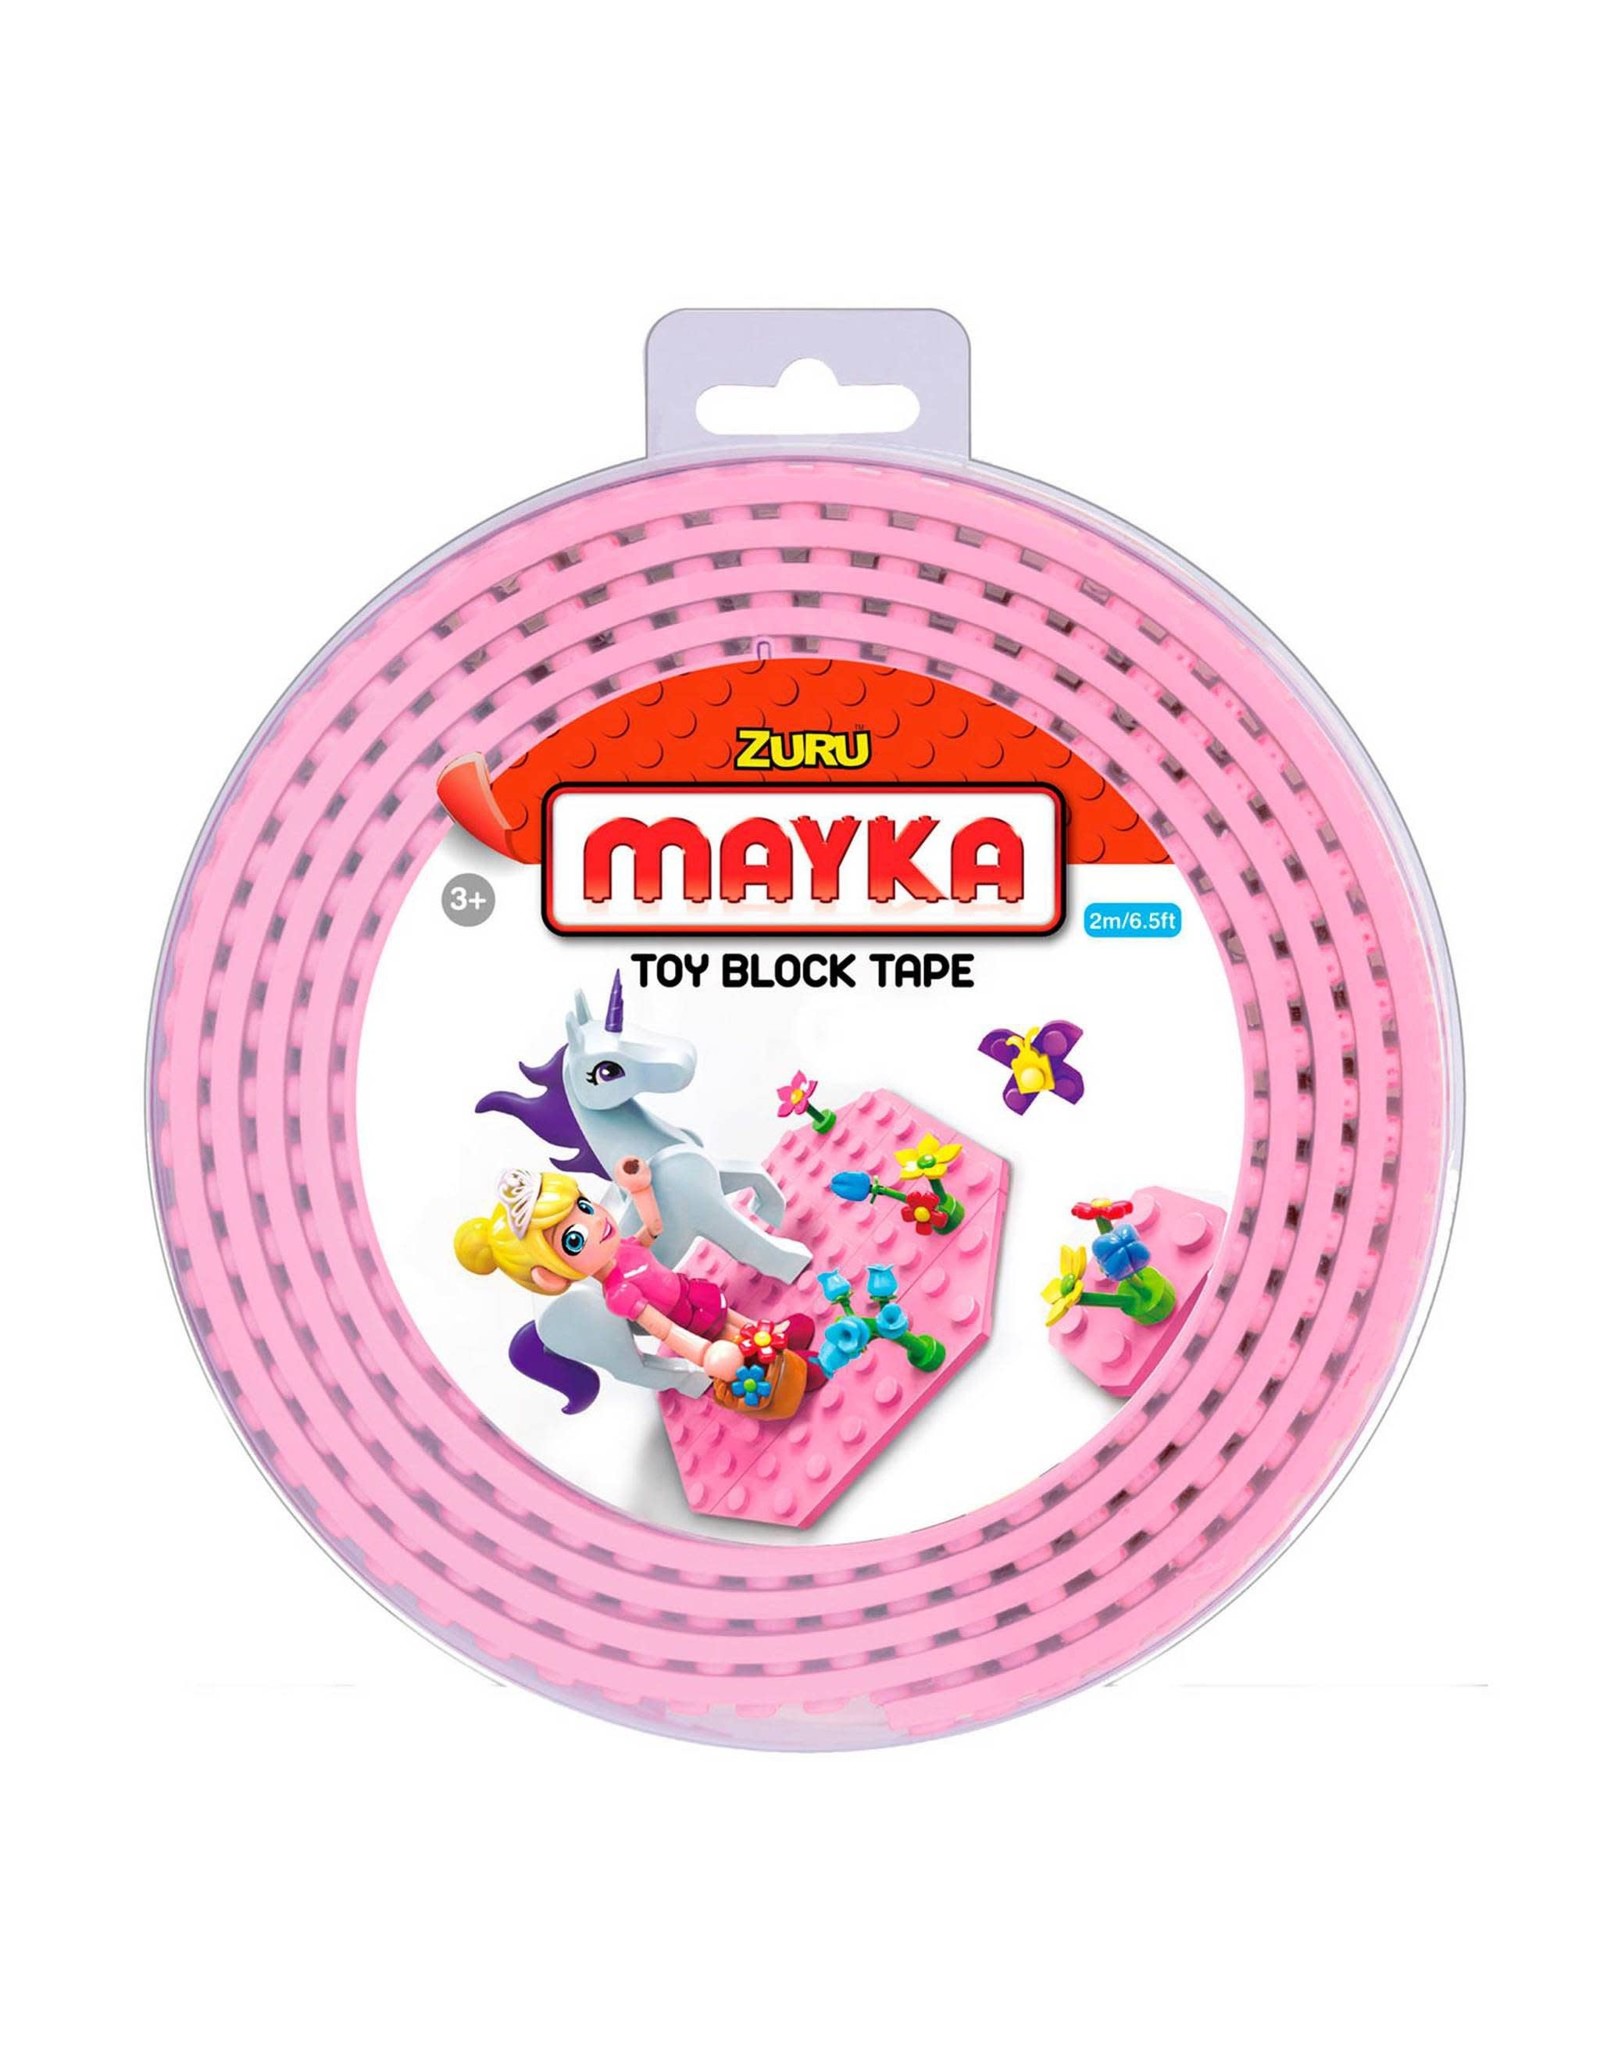 Lego Zuru Mayka Block Tape